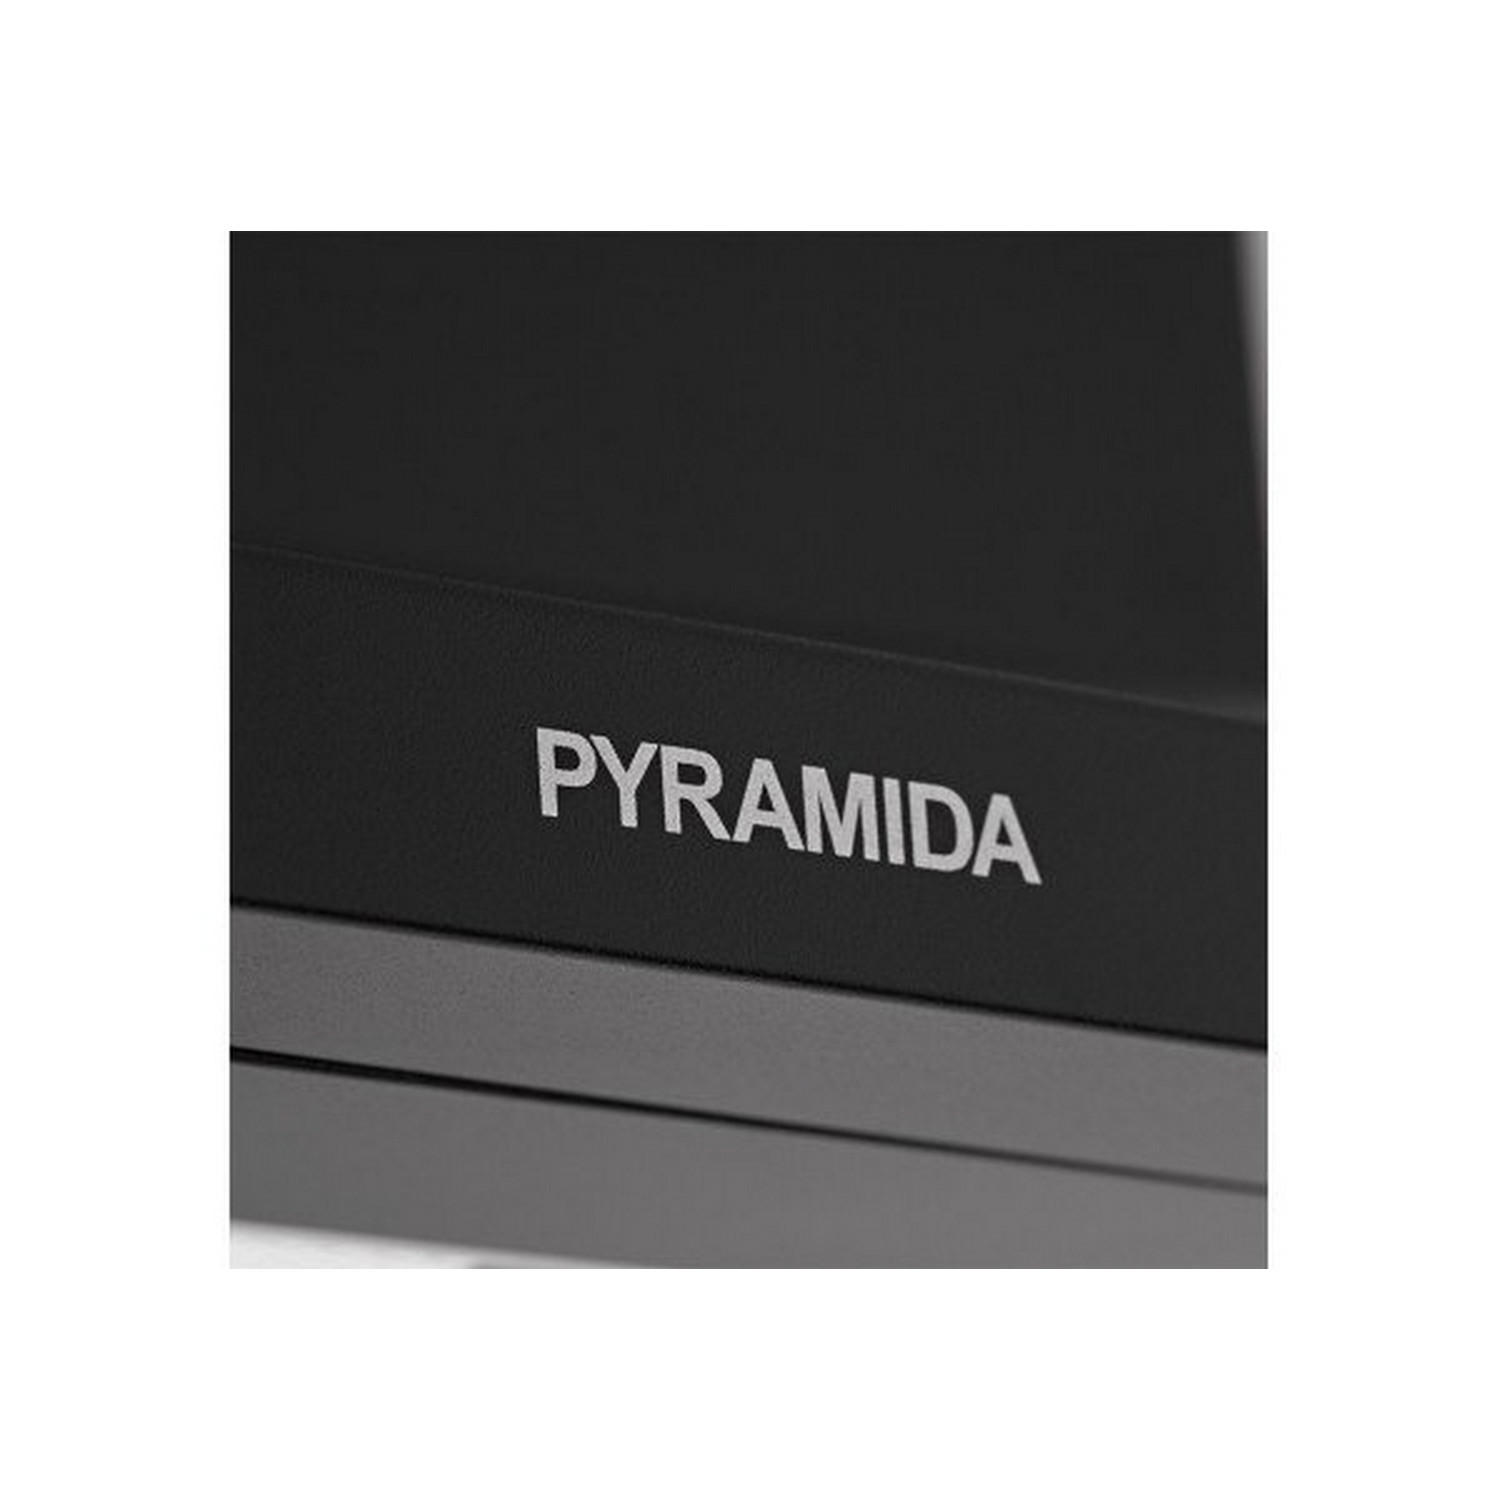 Кухонная вытяжка Pyramida KS 60 Black/U отзывы - изображения 5